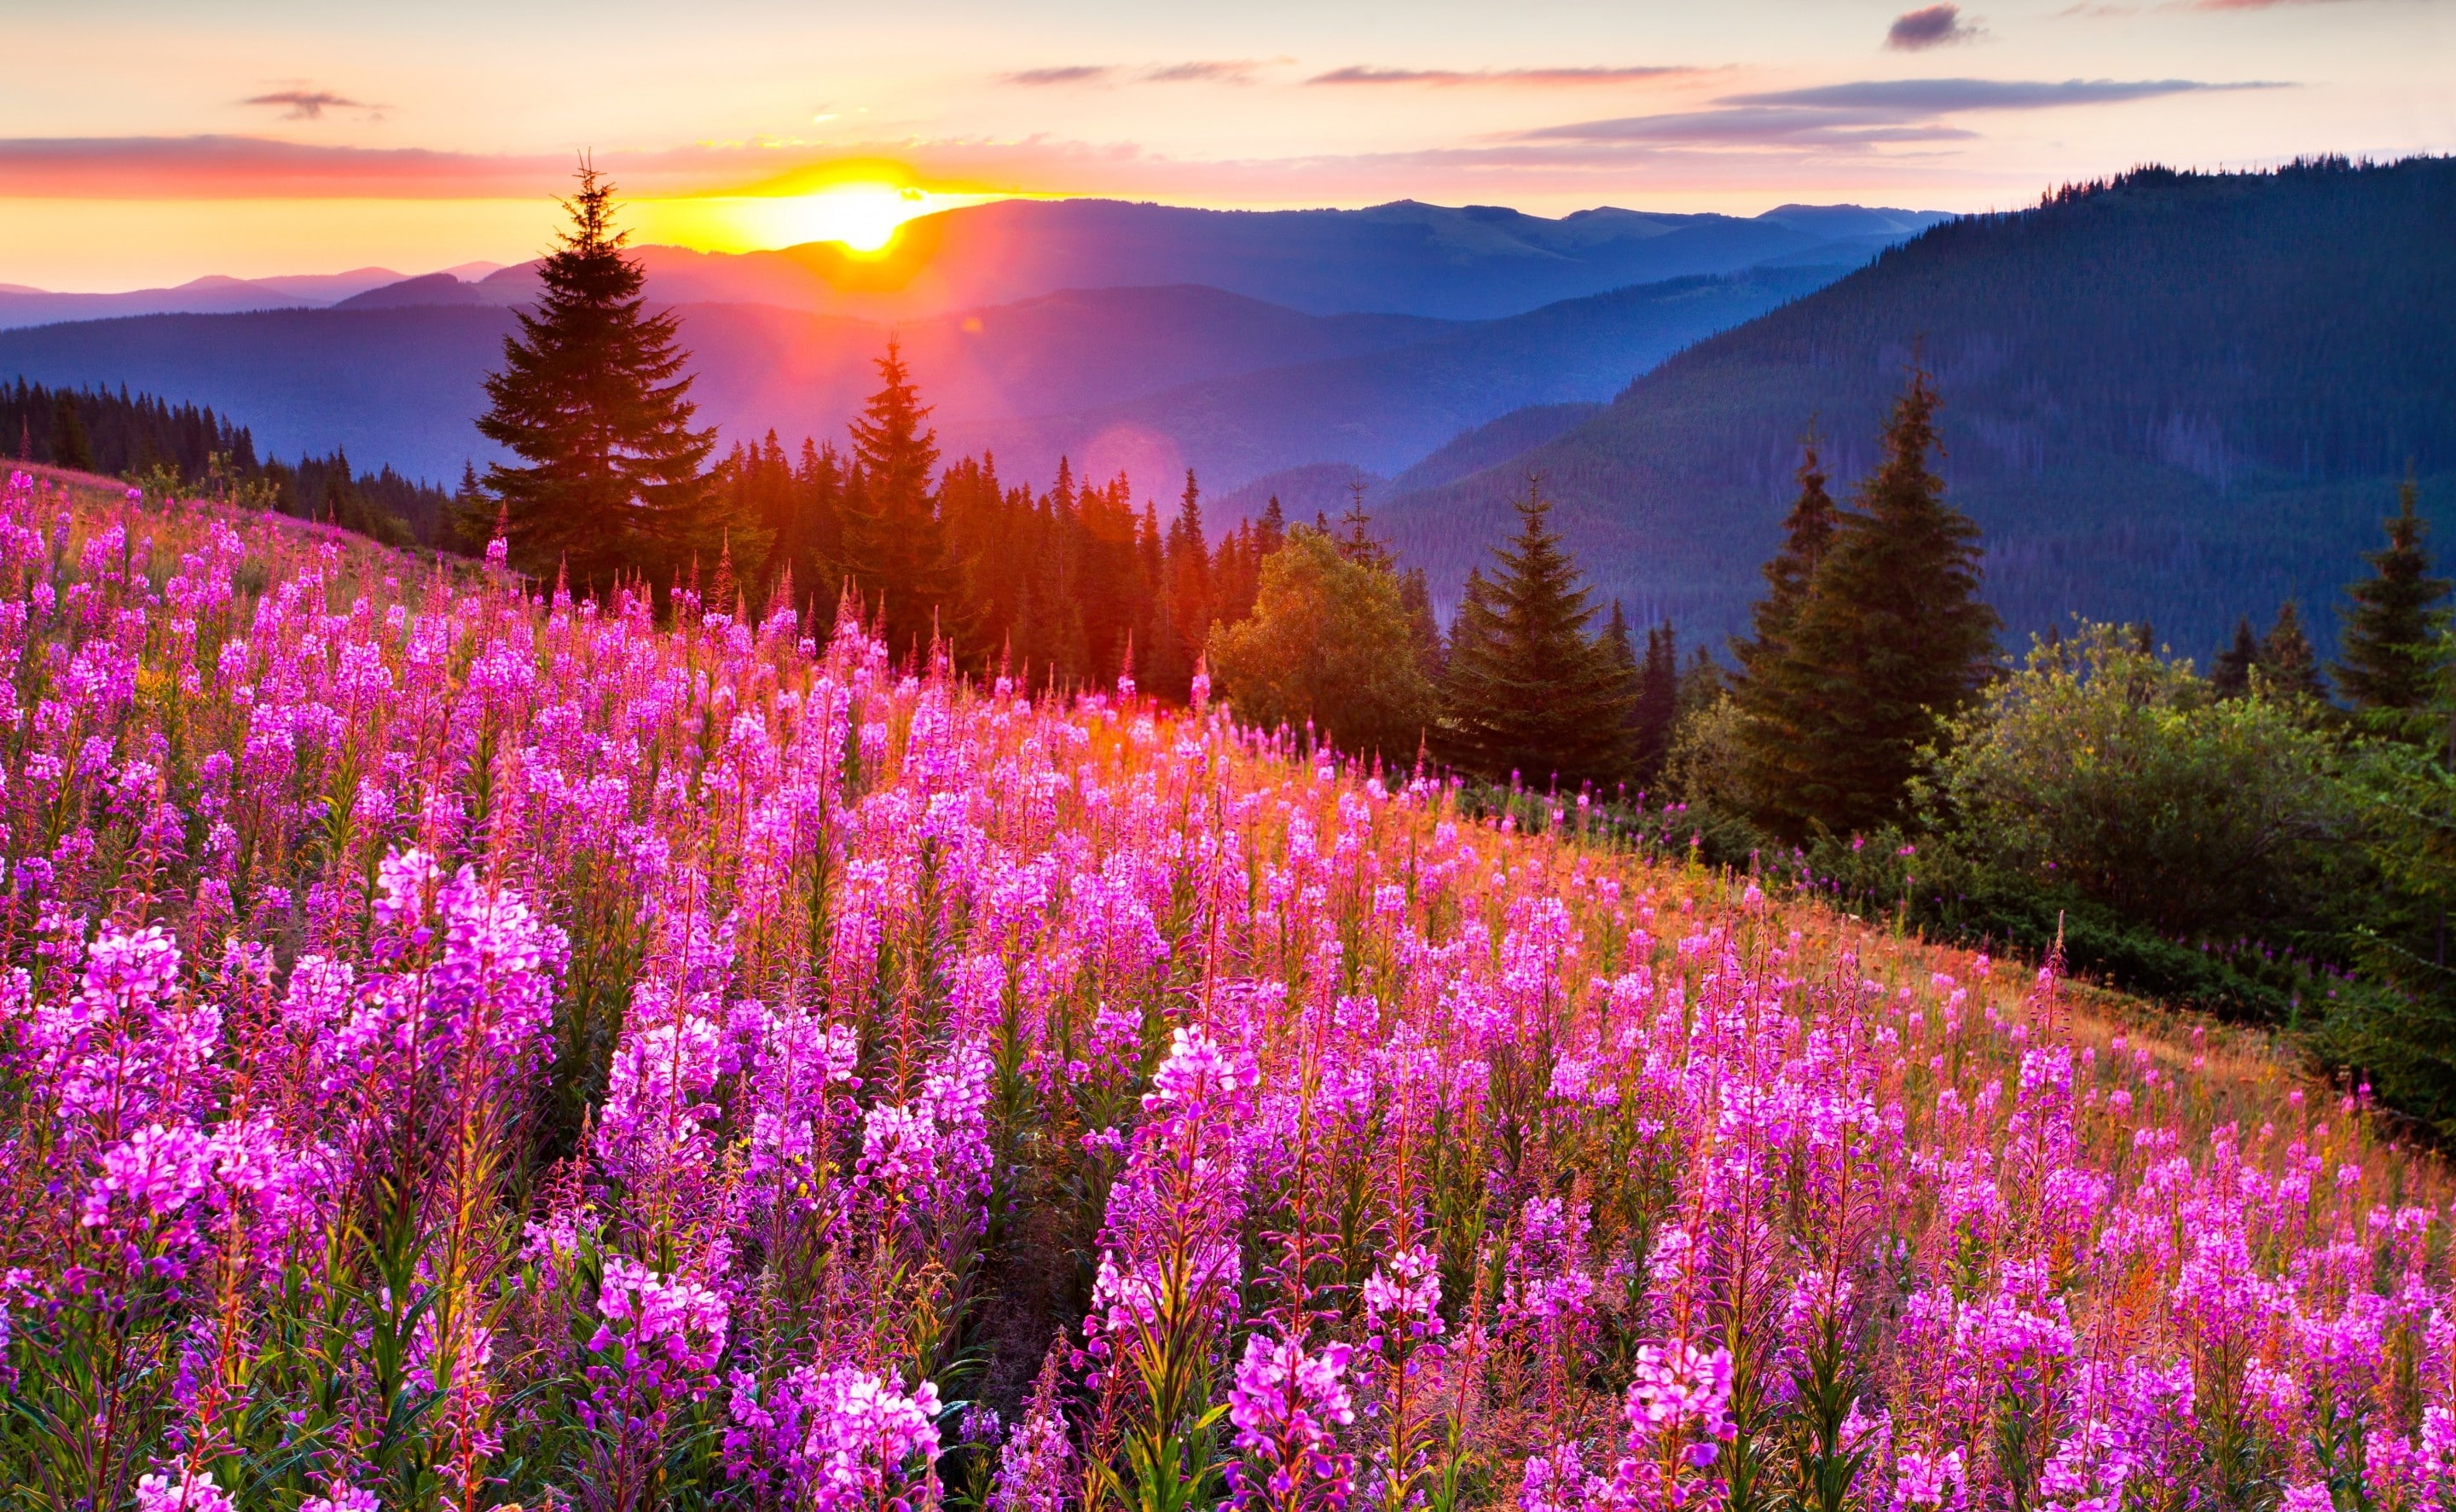 Pink Meadow Sun, pink lupine flower field, Seasons, Summer, beauty in nature